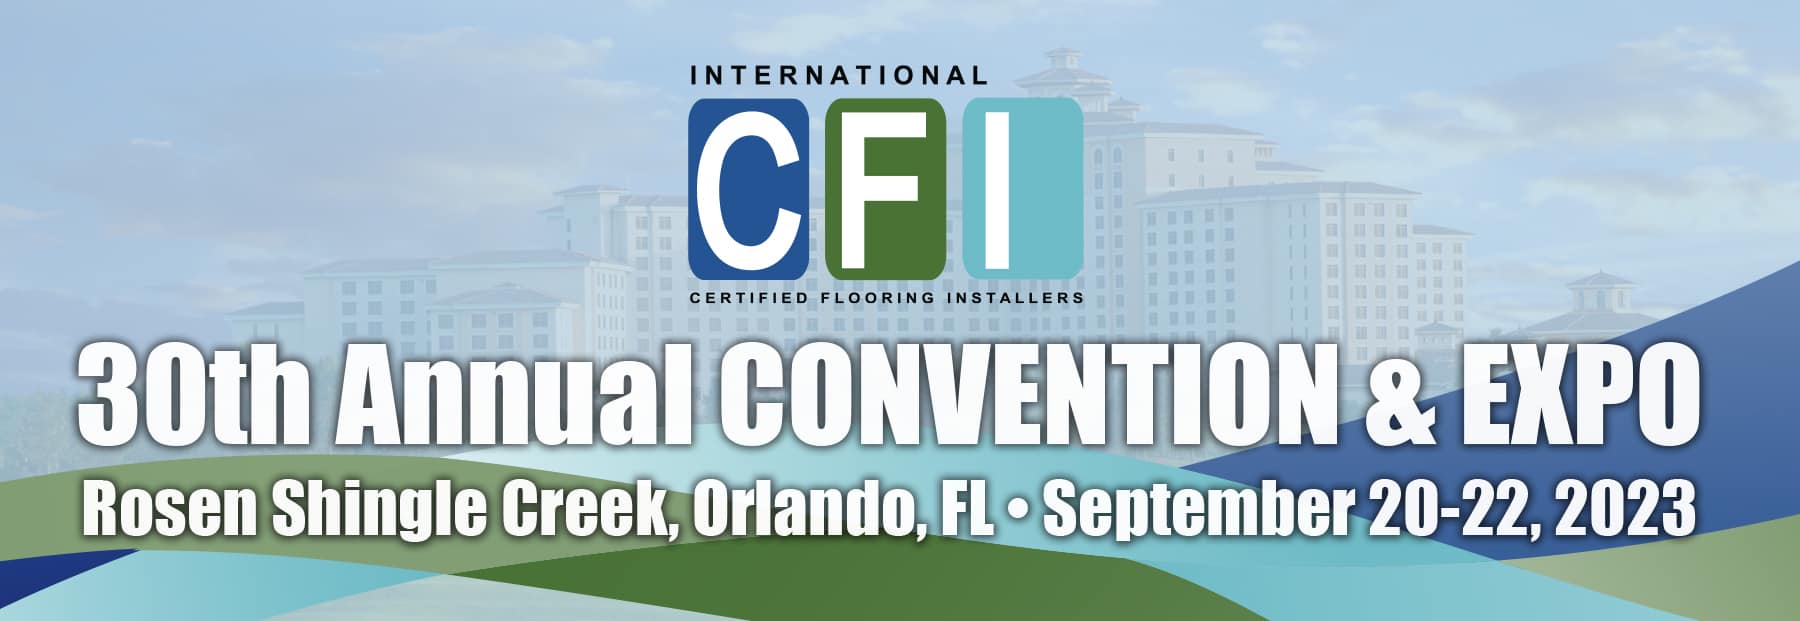 CFI-Convention-Header-2023